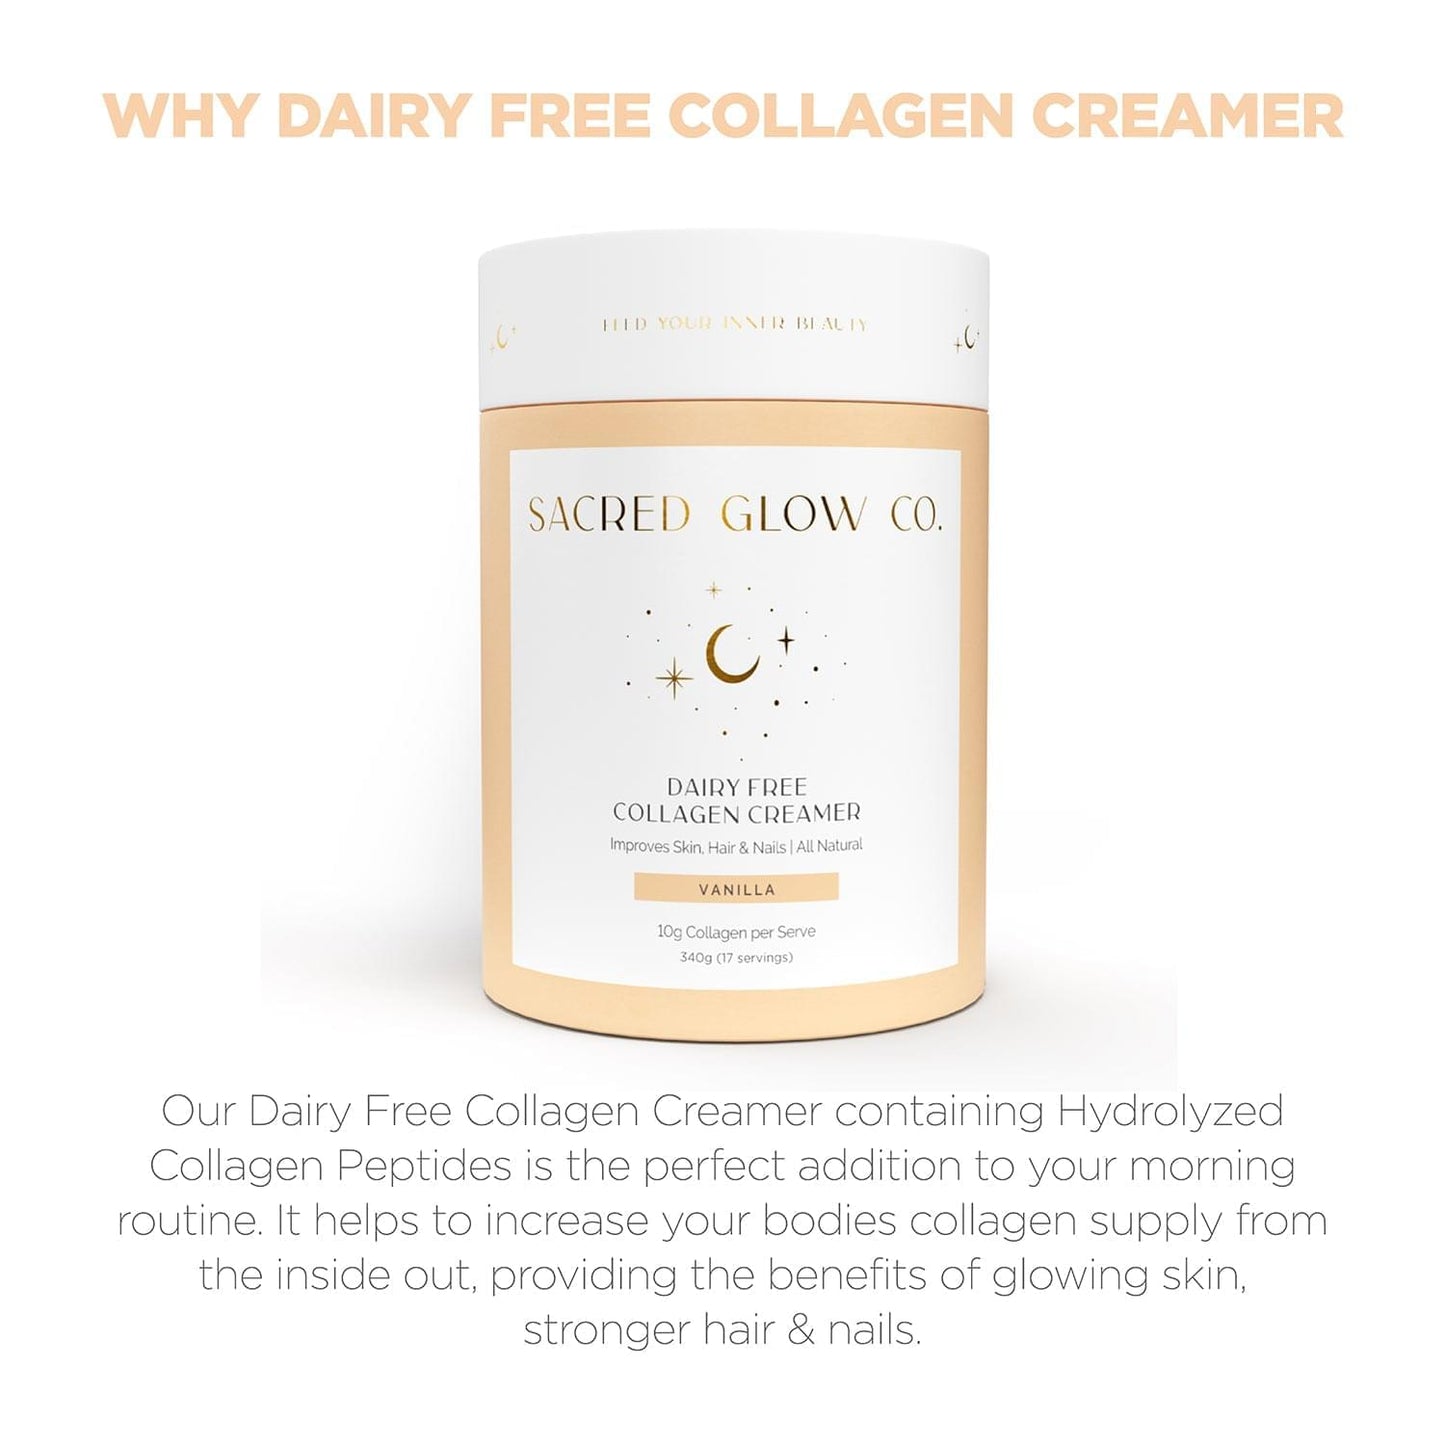 Dairy Free Collagen Creamer - Vanilla